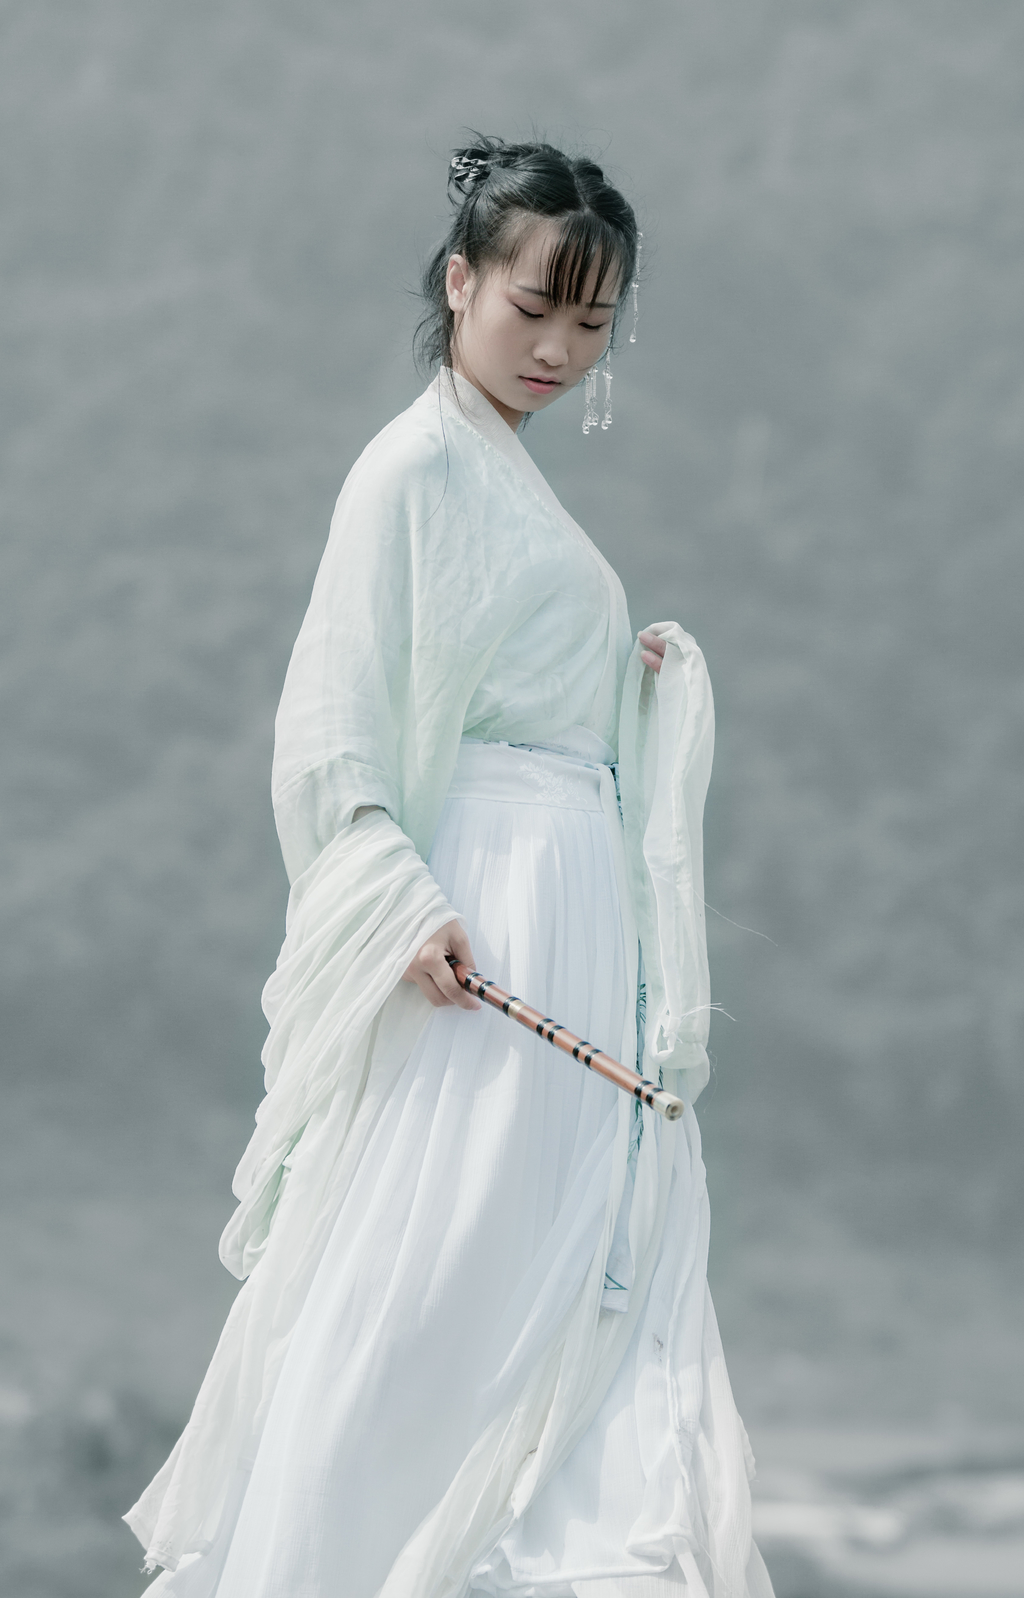 轻纱飘逸的白纱古装江女人美体图片